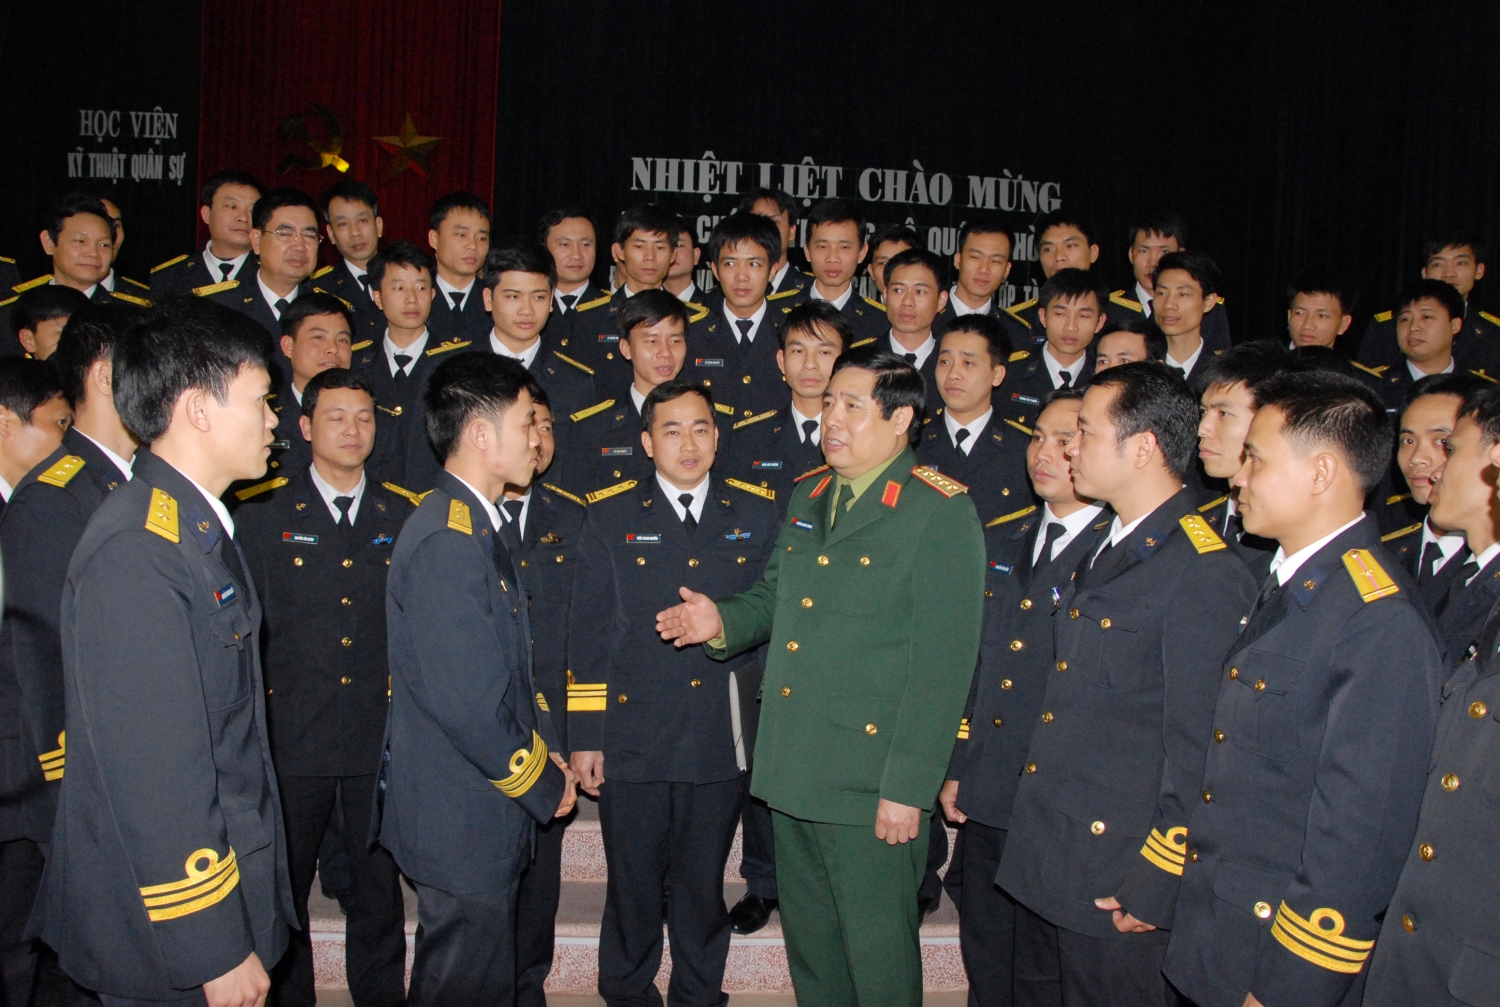 Đại tướng Phùng Quang Thanh thăm, nói chuyện với cán bộ, thủy thủ kíp Tàu ngầm số 1 trước khi đi học tập tại Liên bang Nga (ngày 26/2/2011)